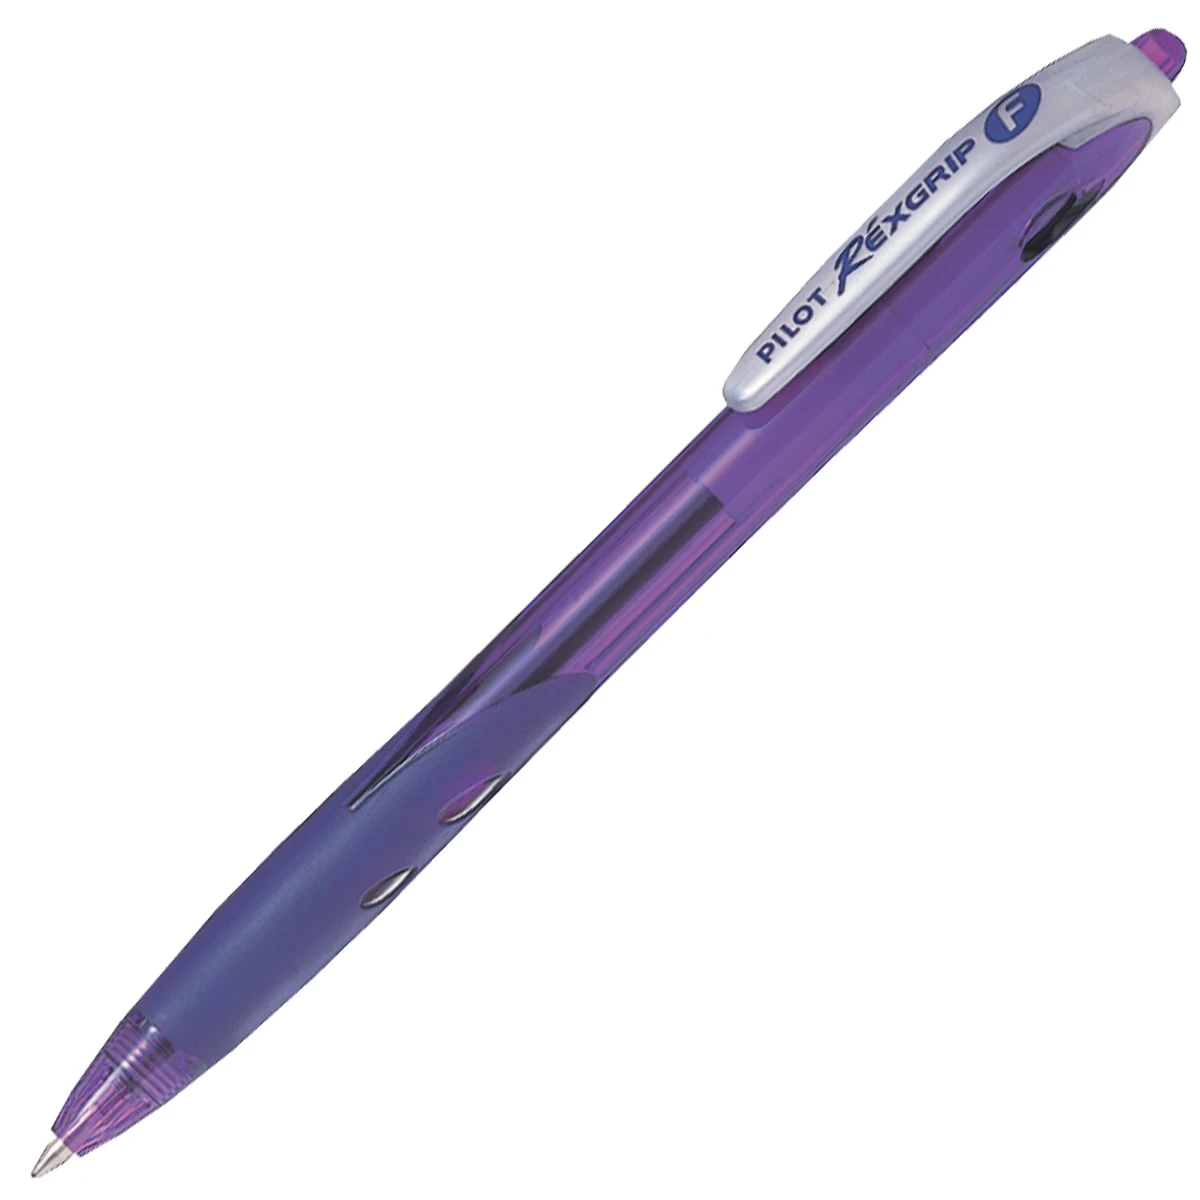 Ручка шариковая автоматическая REXGRIP, фиолетовая, 0,7 мм.